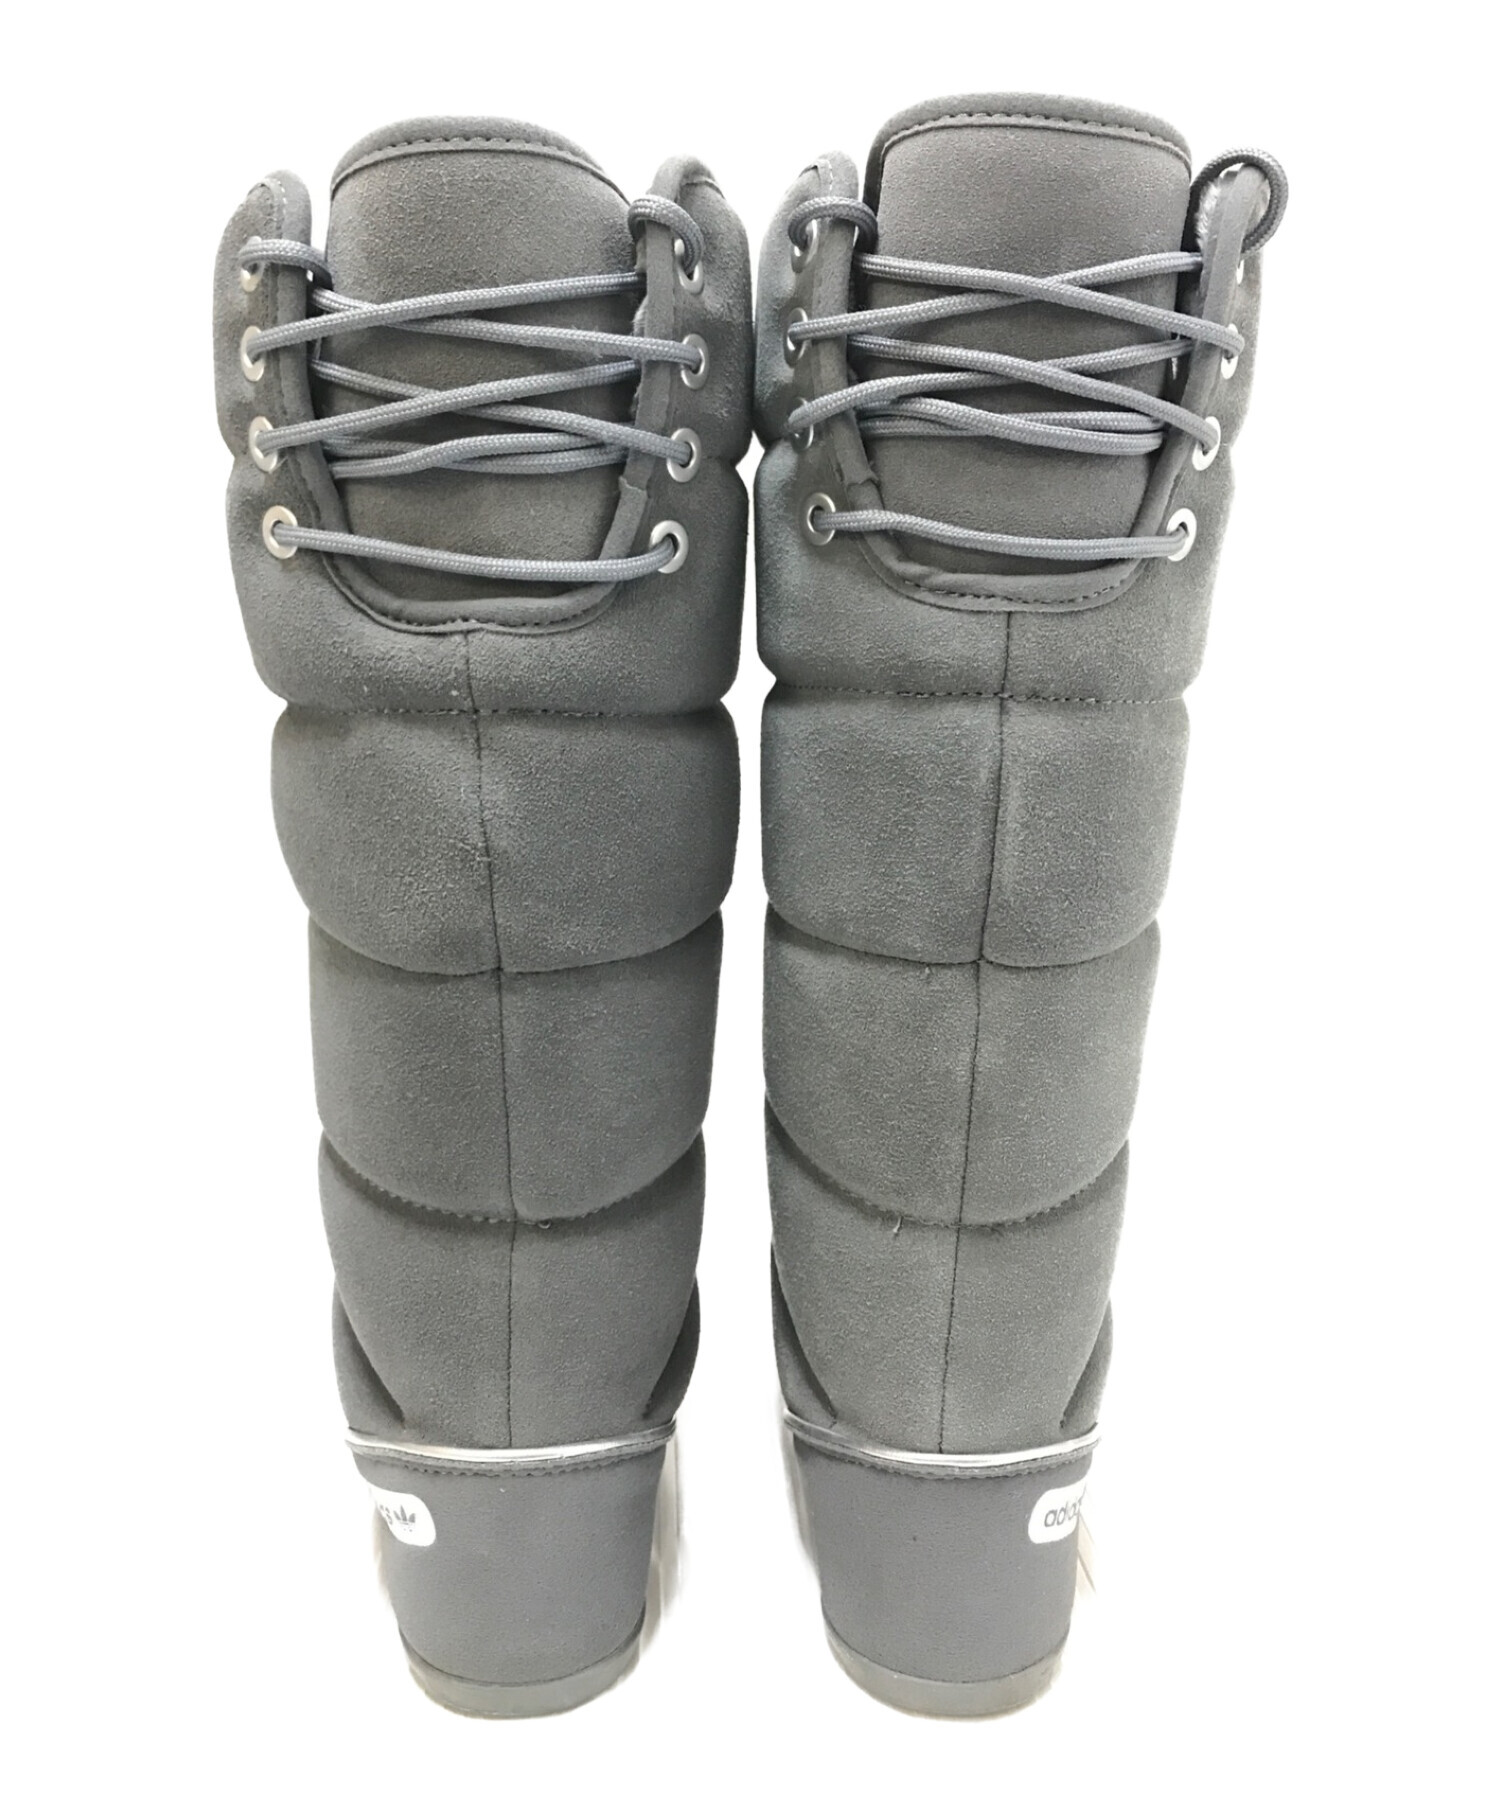 adidas (アディダス) NORTHERN BOOT グレー サイズ:23.5㎝